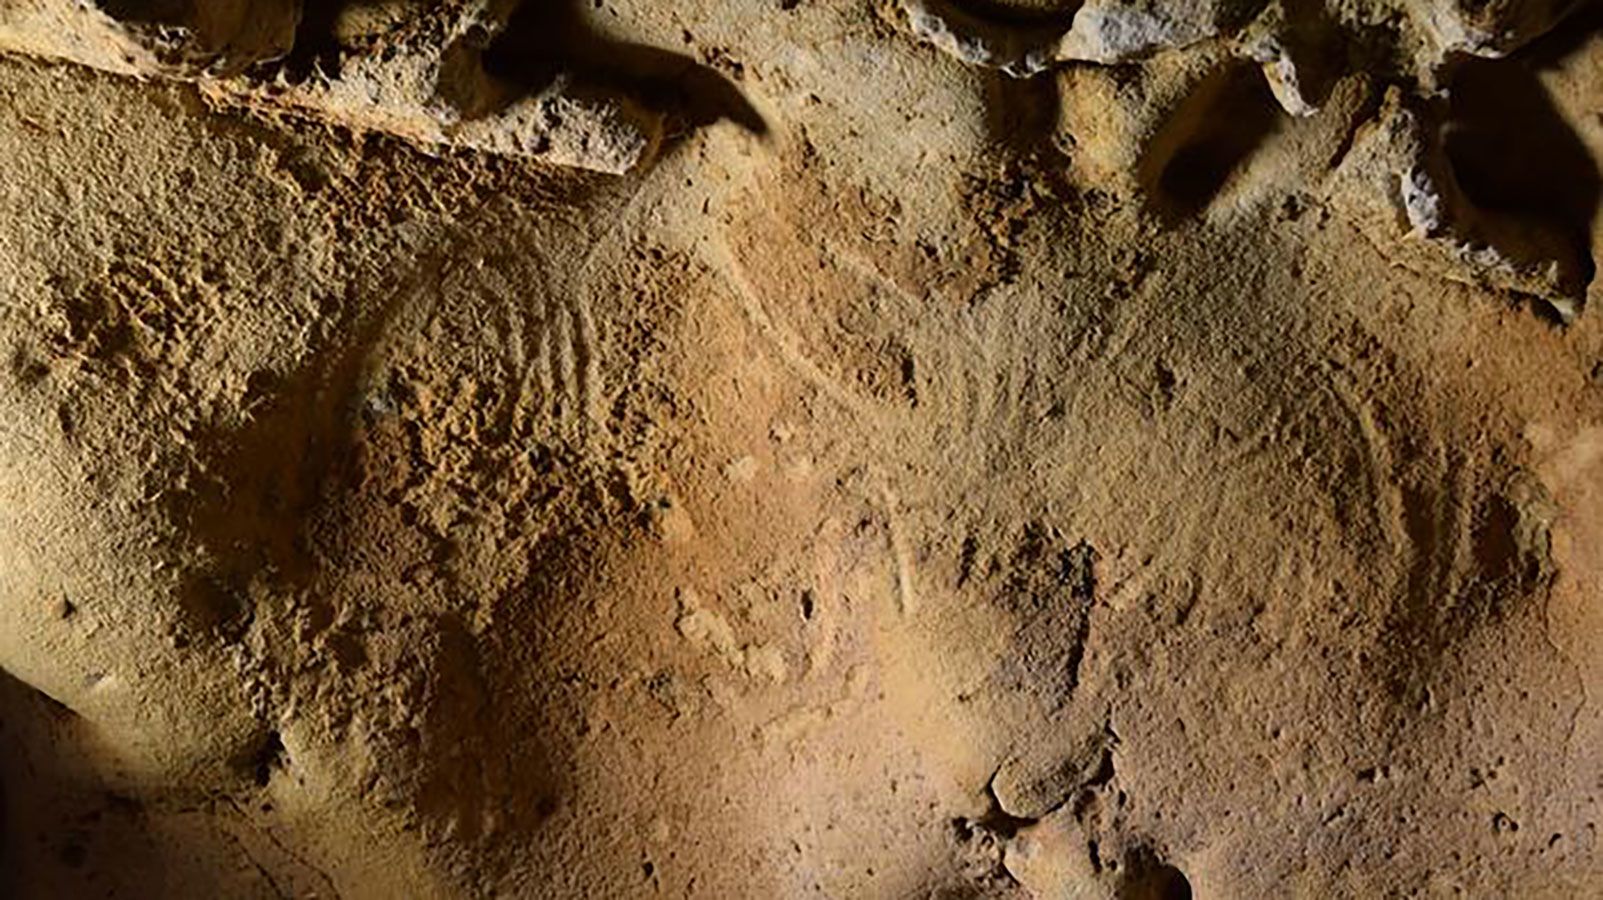 Les Néandertaliens ont créé les plus anciennes gravures "intentionnelles" d'Europe il y a jusqu'à 75,000 2 ans, selon une étude XNUMX